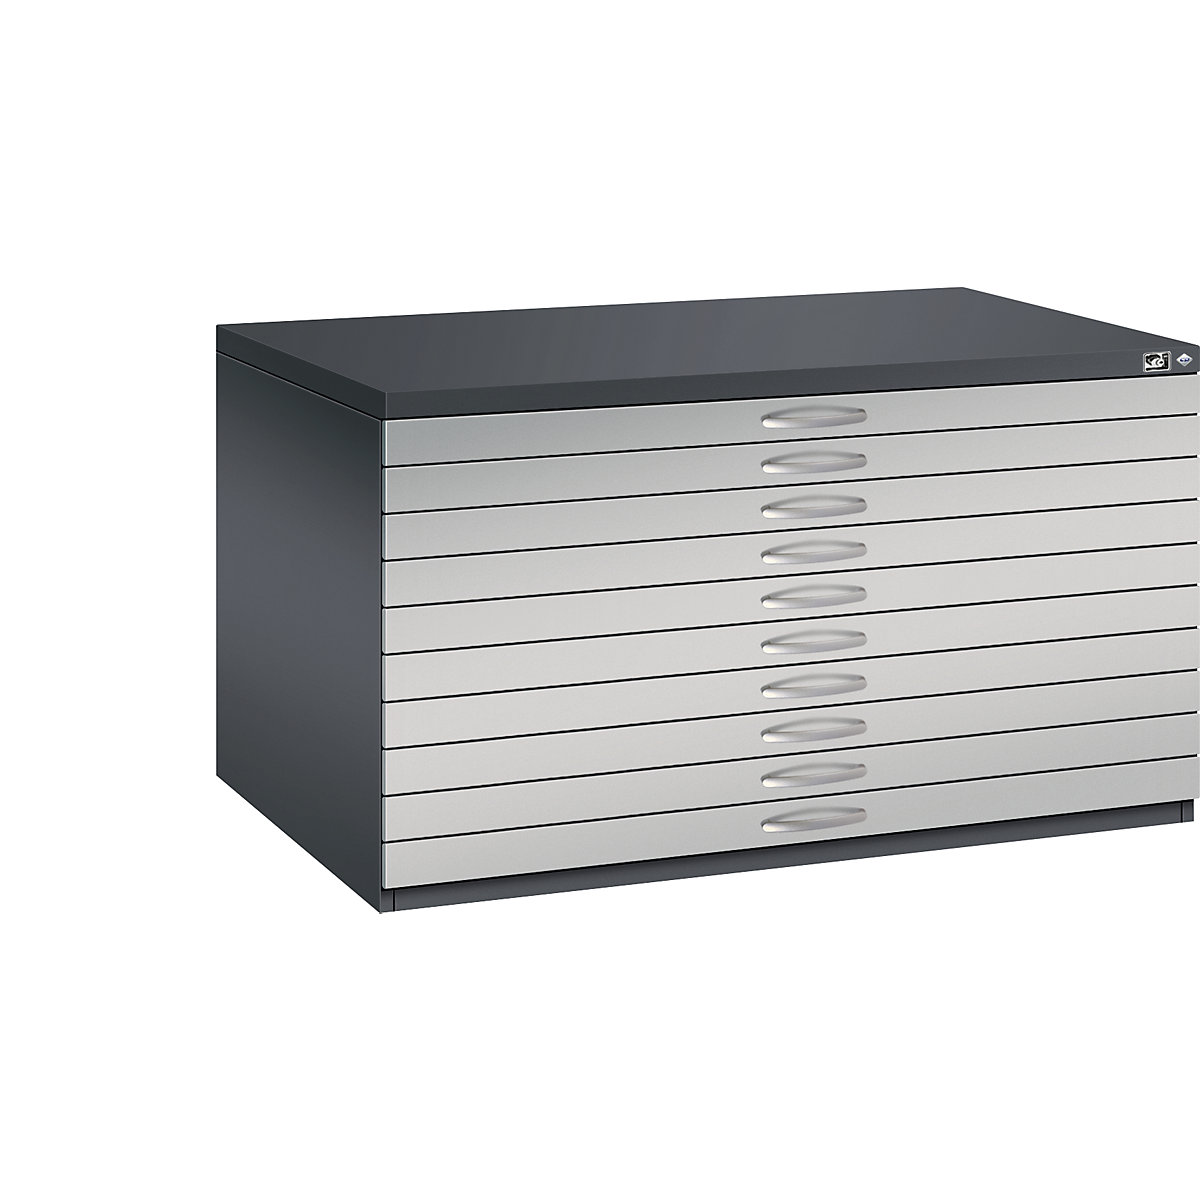 Rajztároló szekrény – C+P, DIN A0, 10 fiók, magasság 760 mm, feketésszürke / fehéralumínium-21